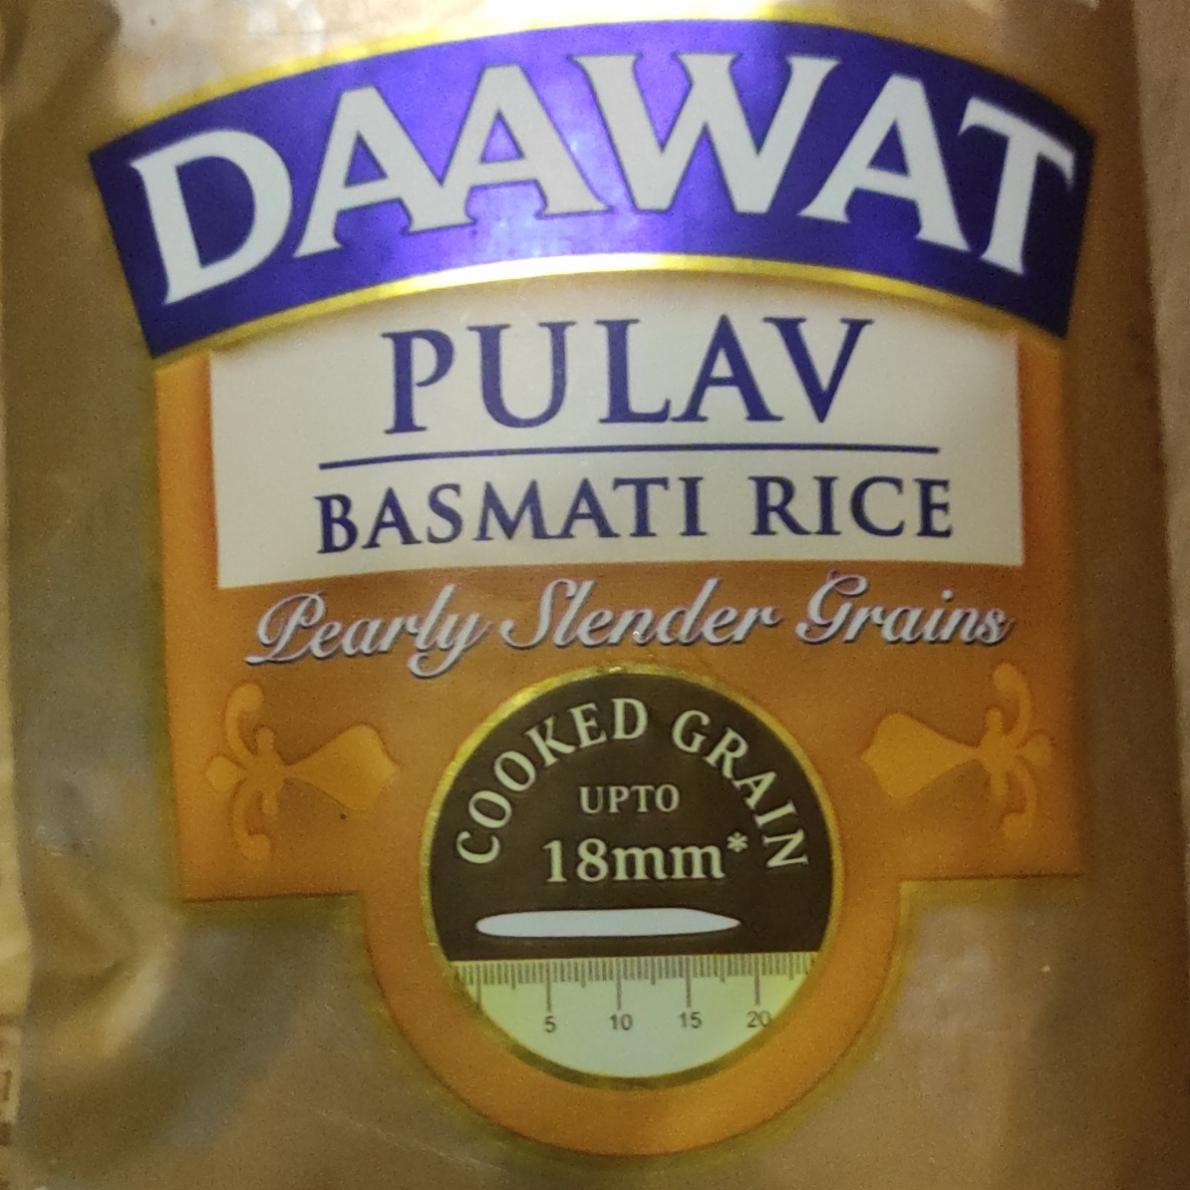 Фото - Pulav basmati rice Daawat